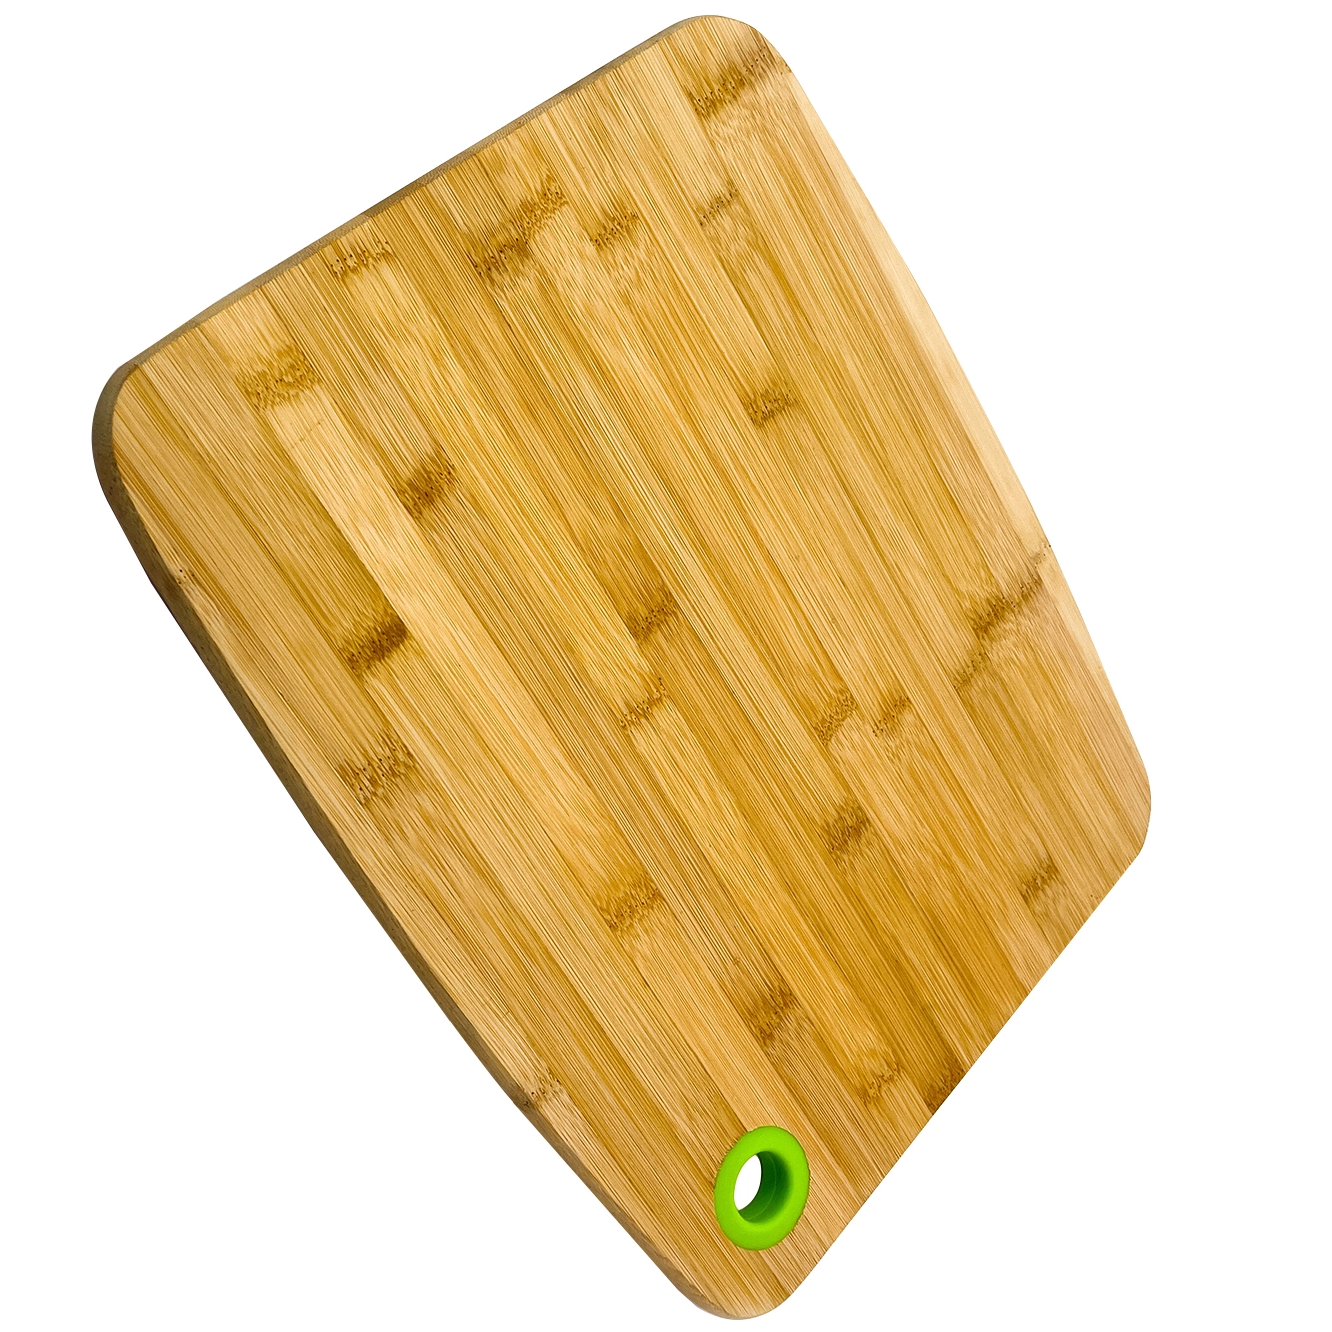 Tabla de cortar de madera de bambú Natural, tabla de cortar, tabla de cortar para cocina, venta al por mayor